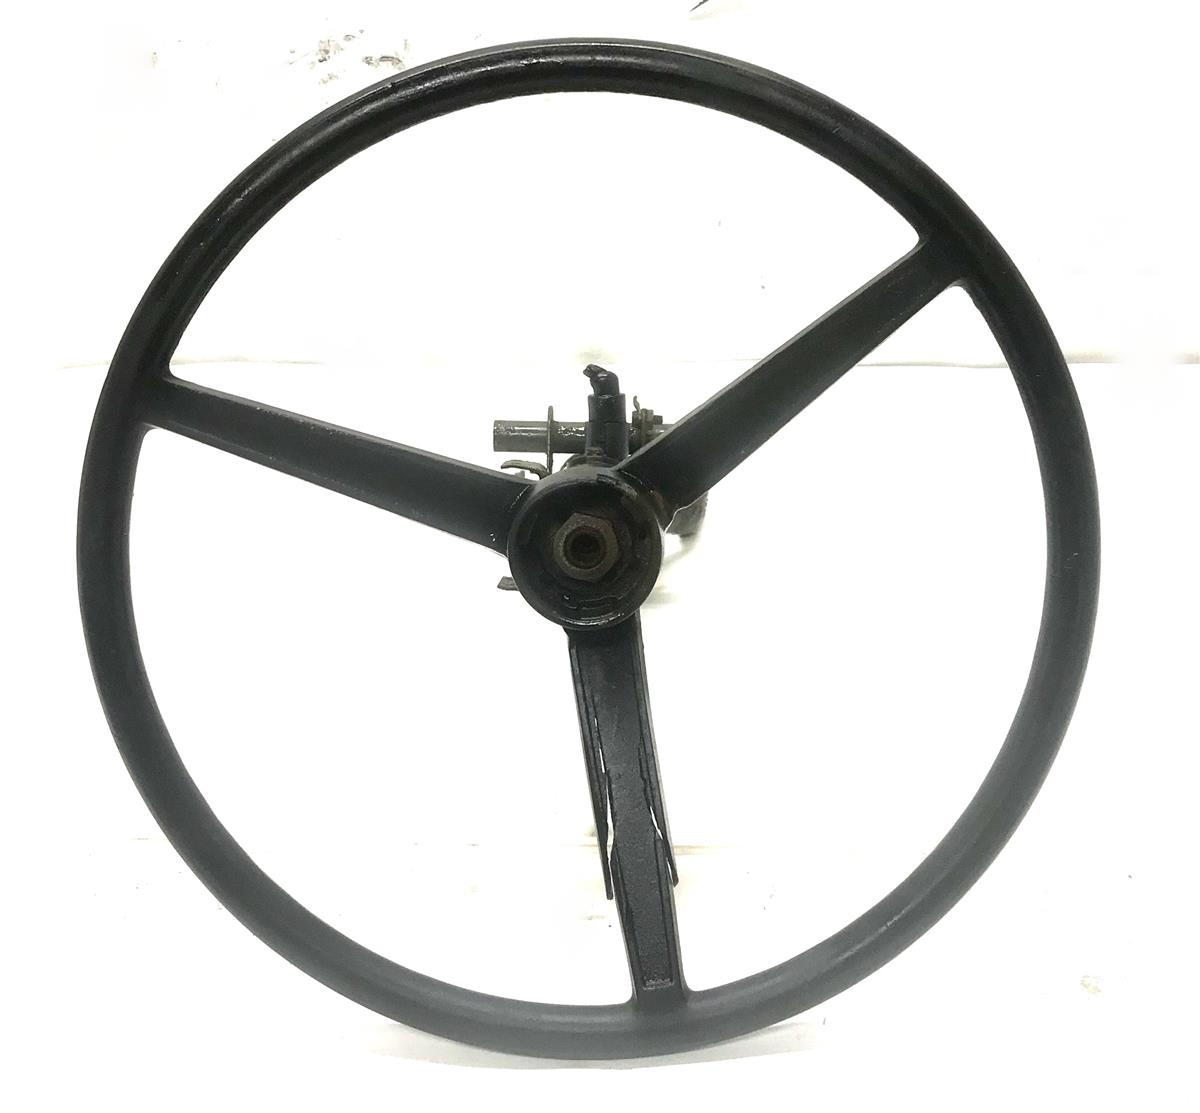 HM-1333 | HM-1333  14 Inch Steering Wheel With Upper Steering Column HMMWV (1).jpg